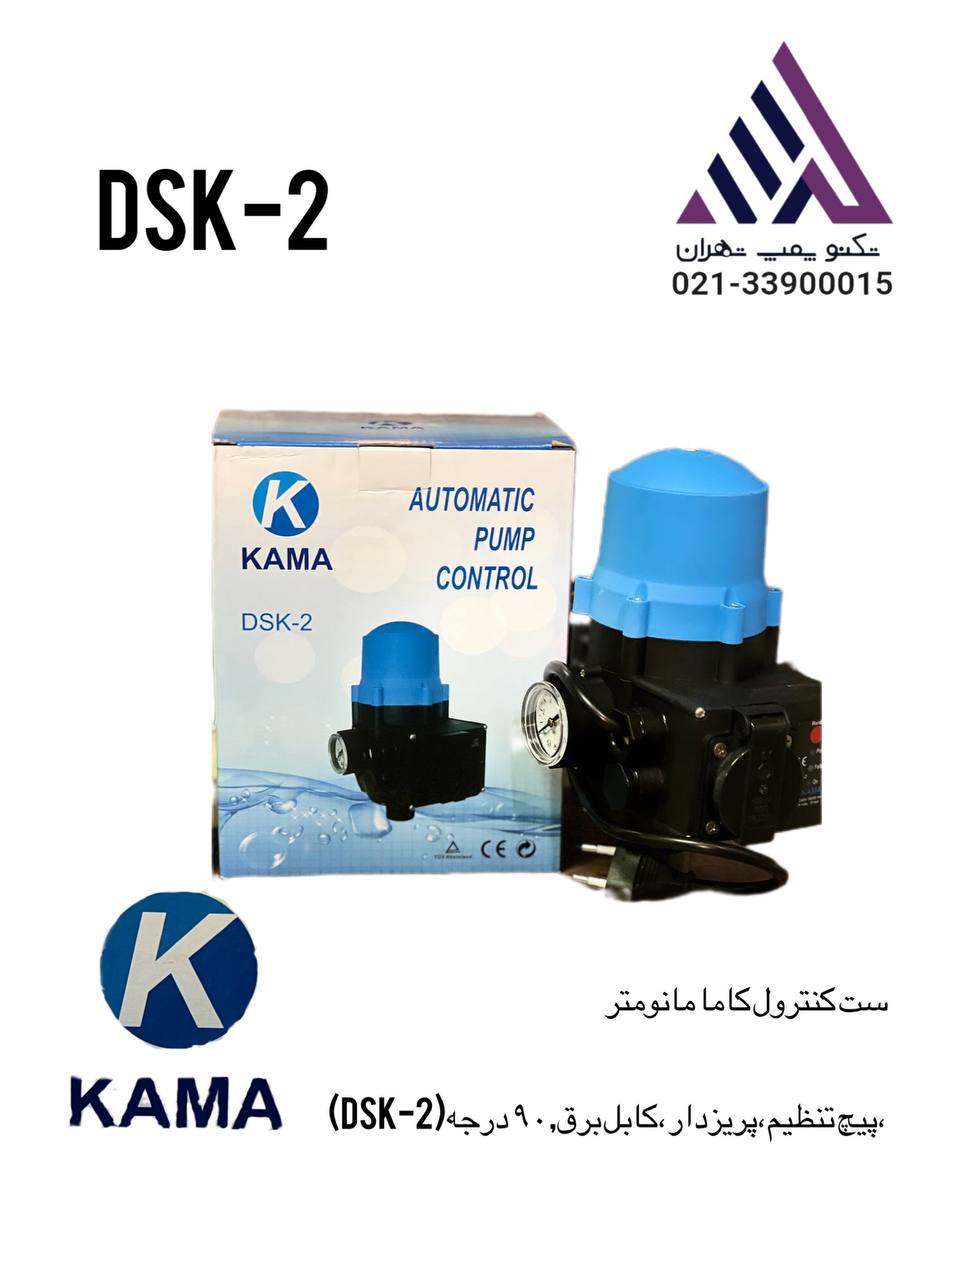 ست کنترل کاما90 درجه تنظیم دار(DSk-2)